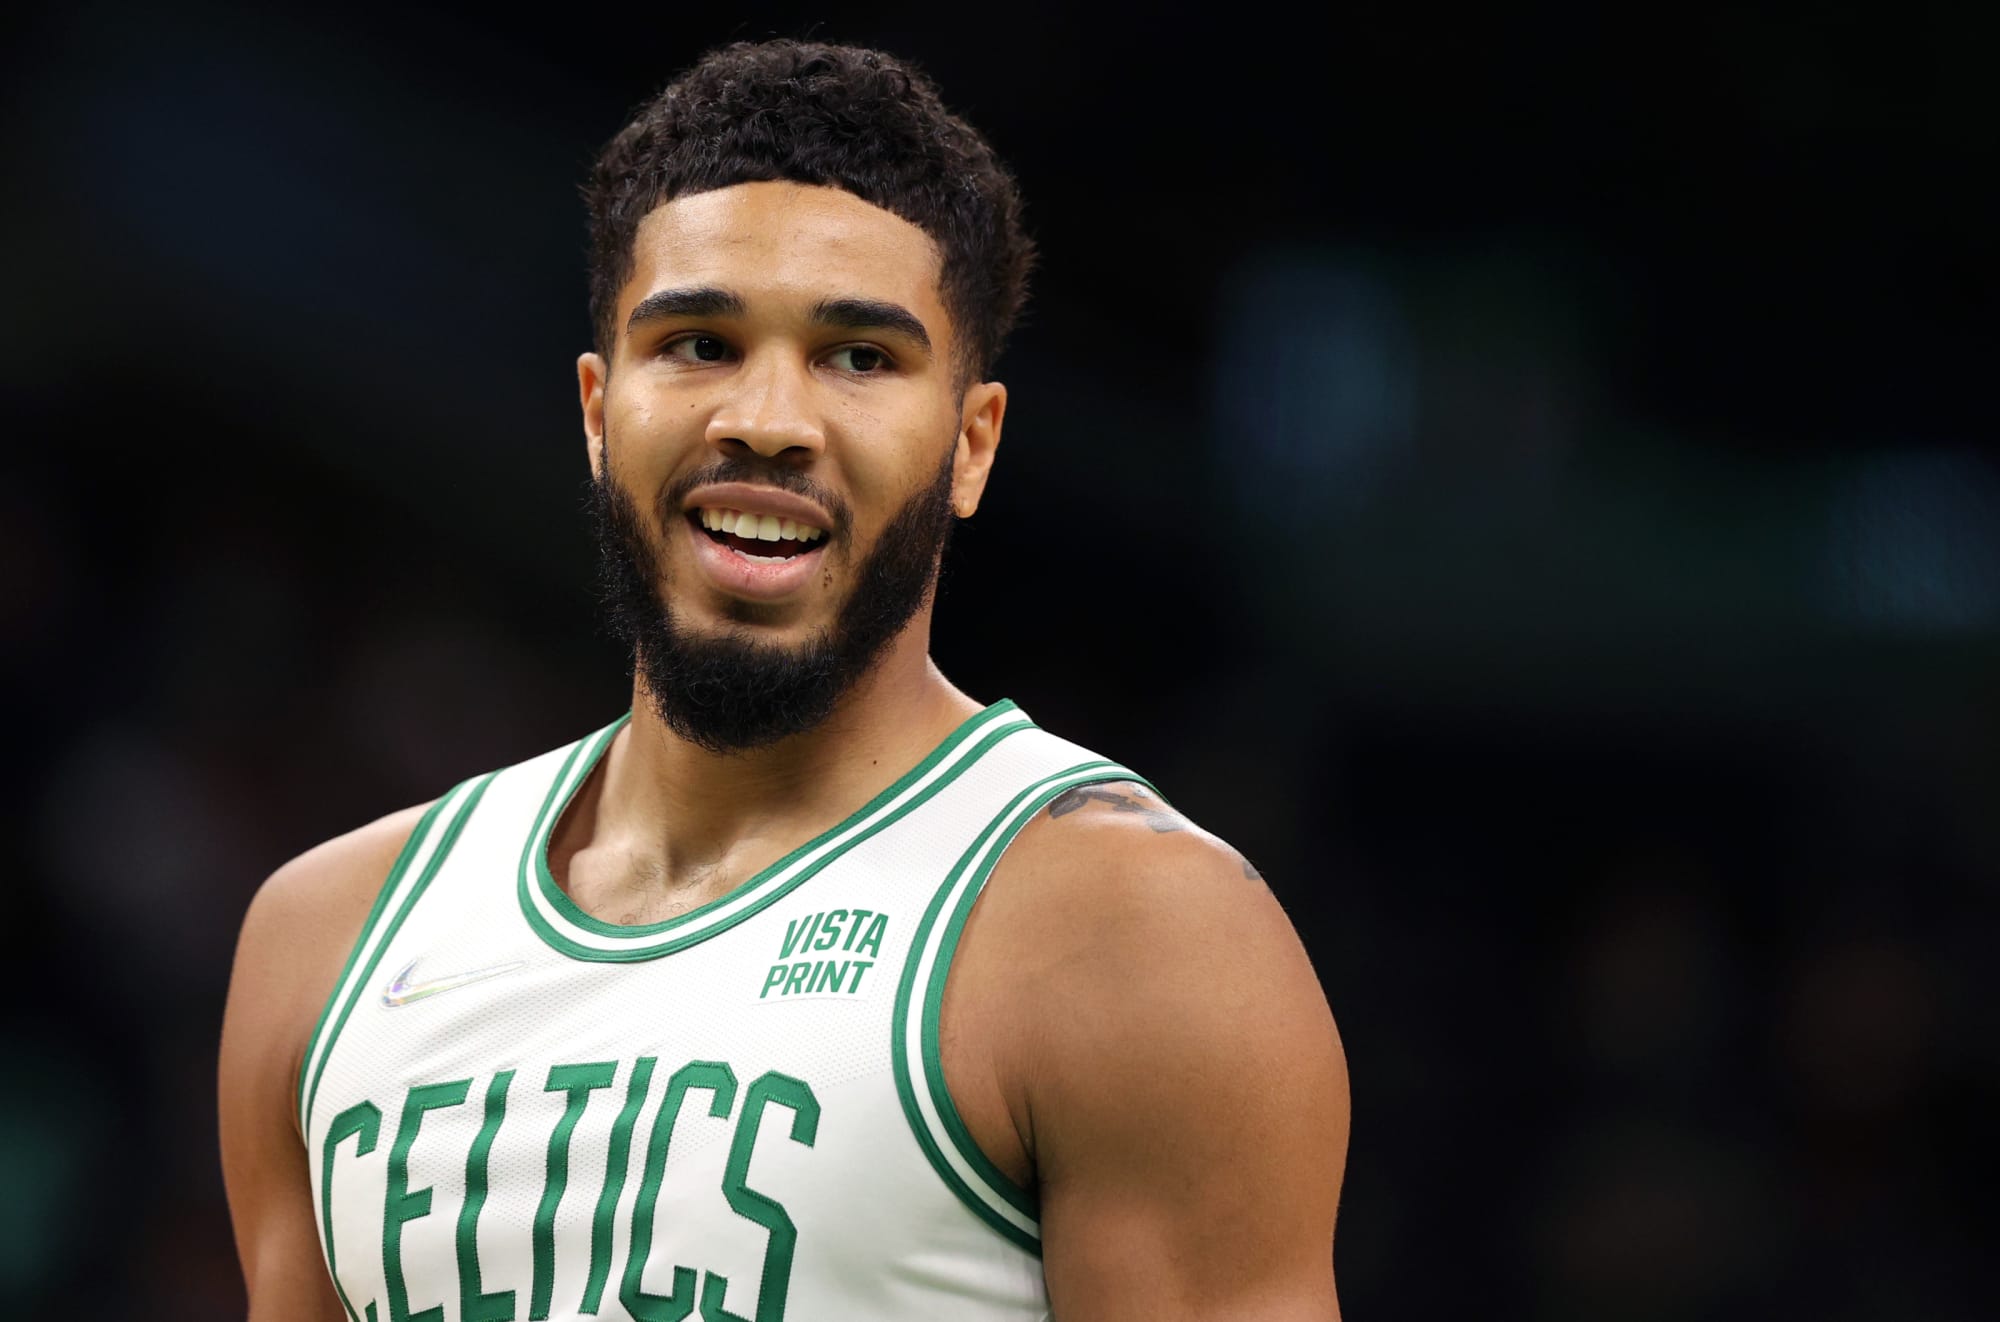 Celtics Take 3-0 Lead Over Nets On Back of Tatum’s Performance